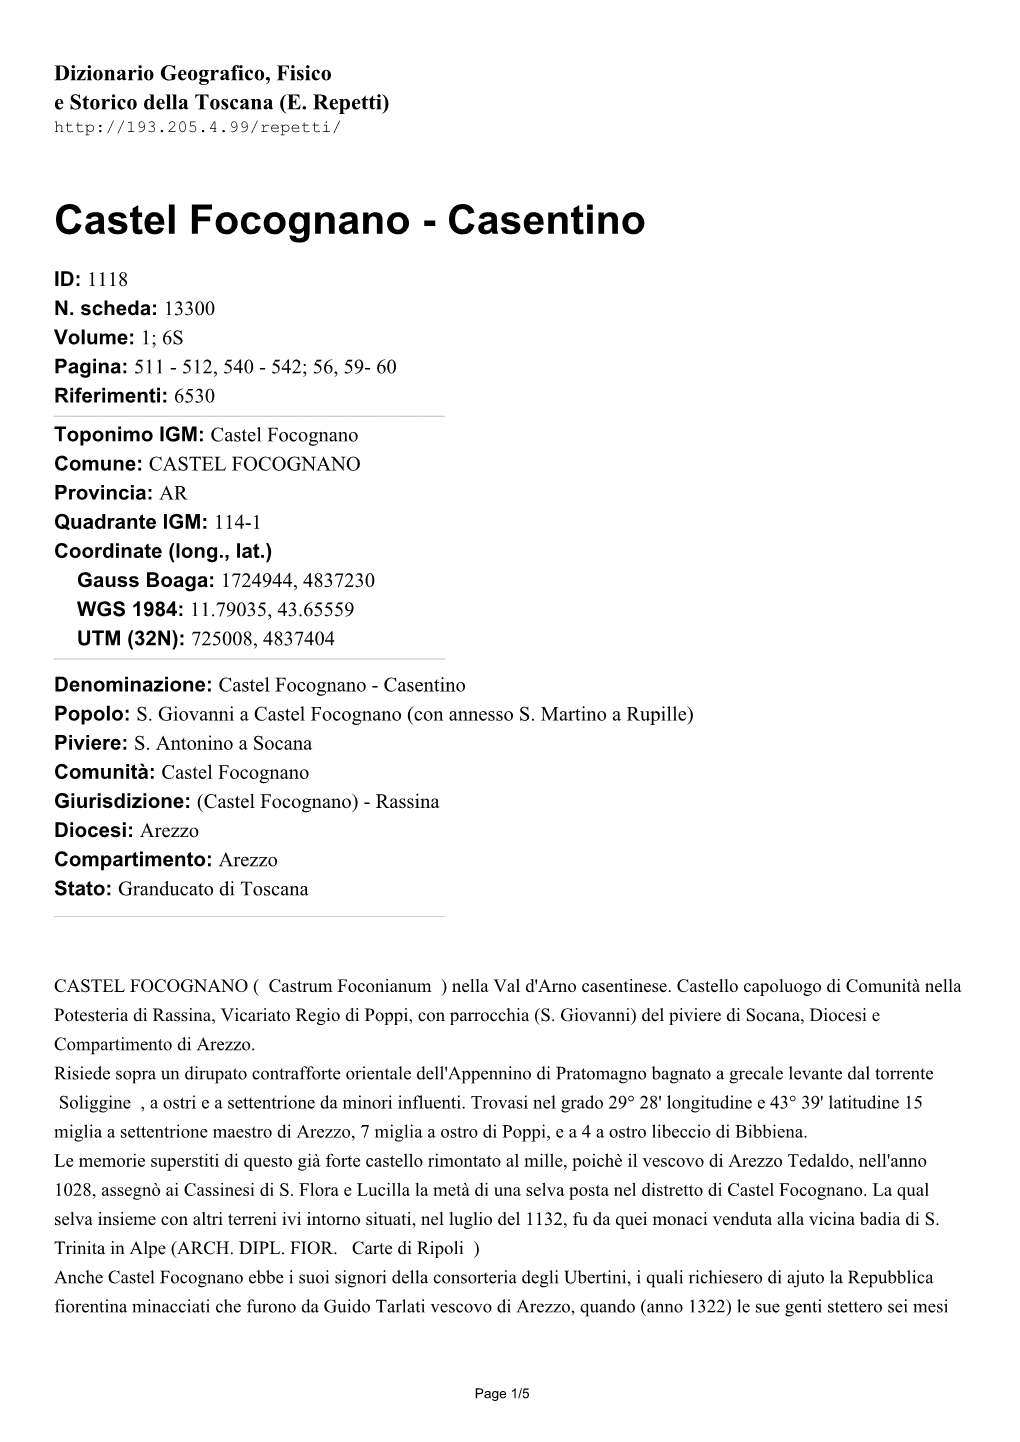 Castel Focognano - Casentino